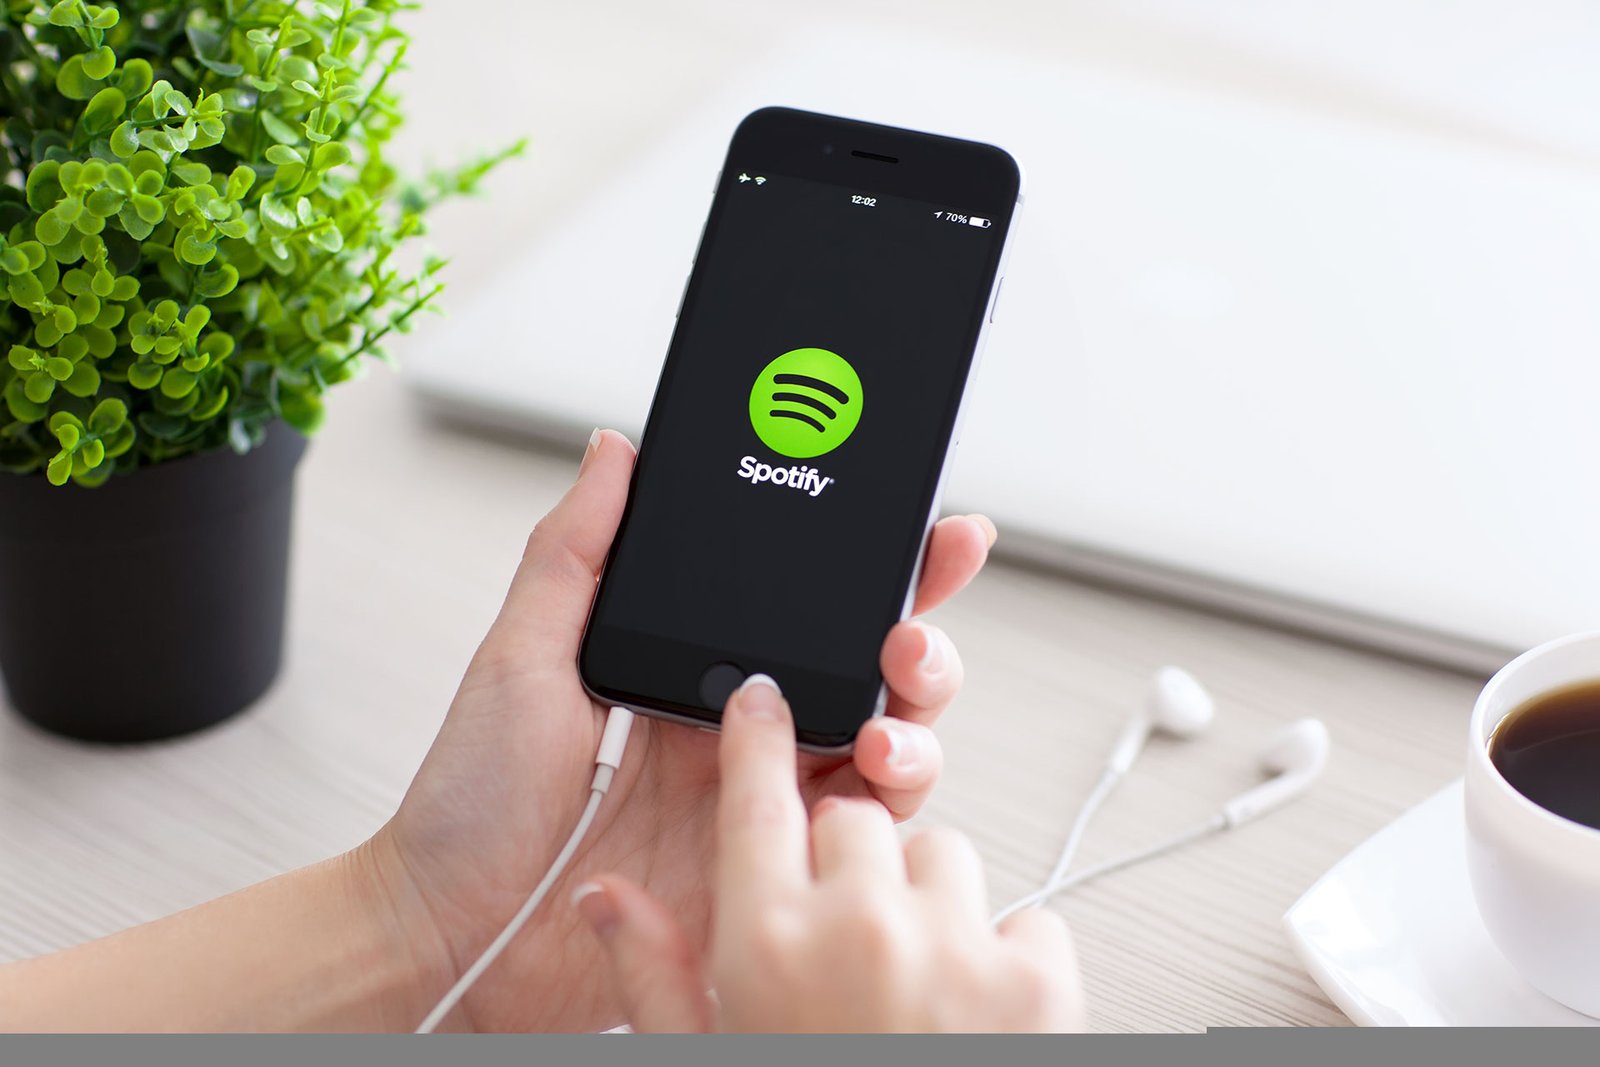 Spotify ¿Qué es y cómo nació? | LatinWMG.com